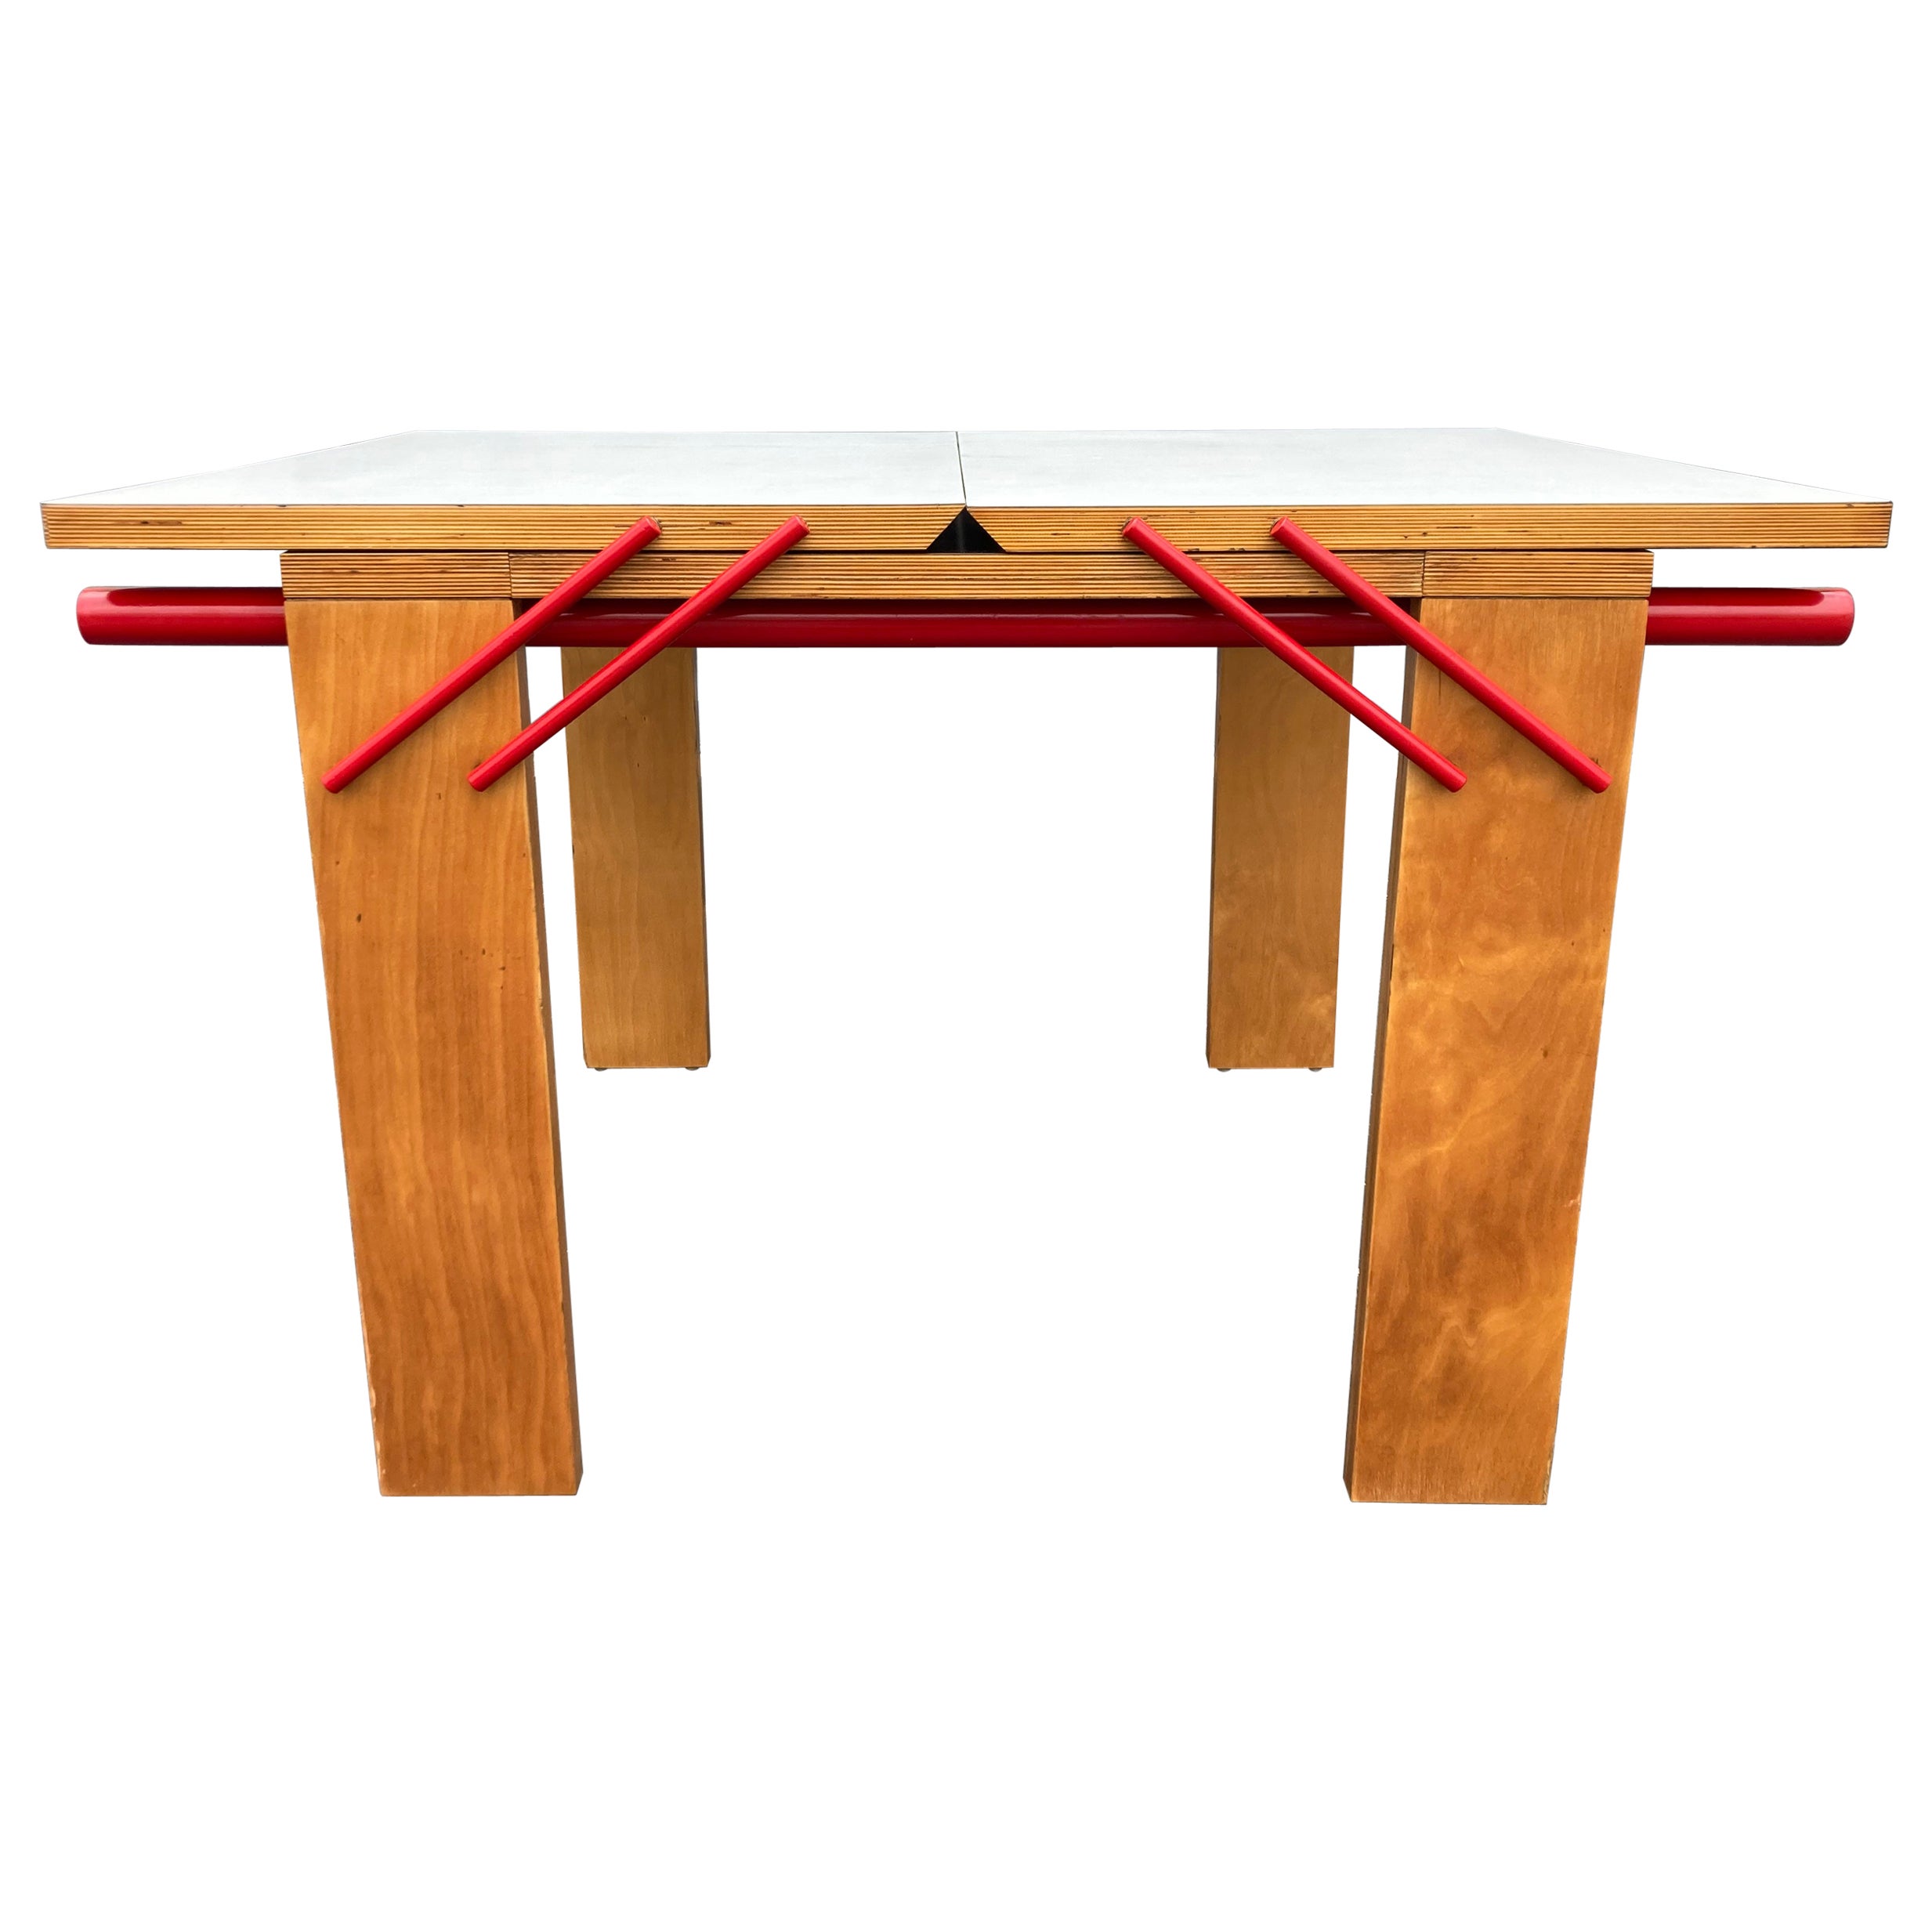 Table de salle à manger design, contreplaqué, rouge